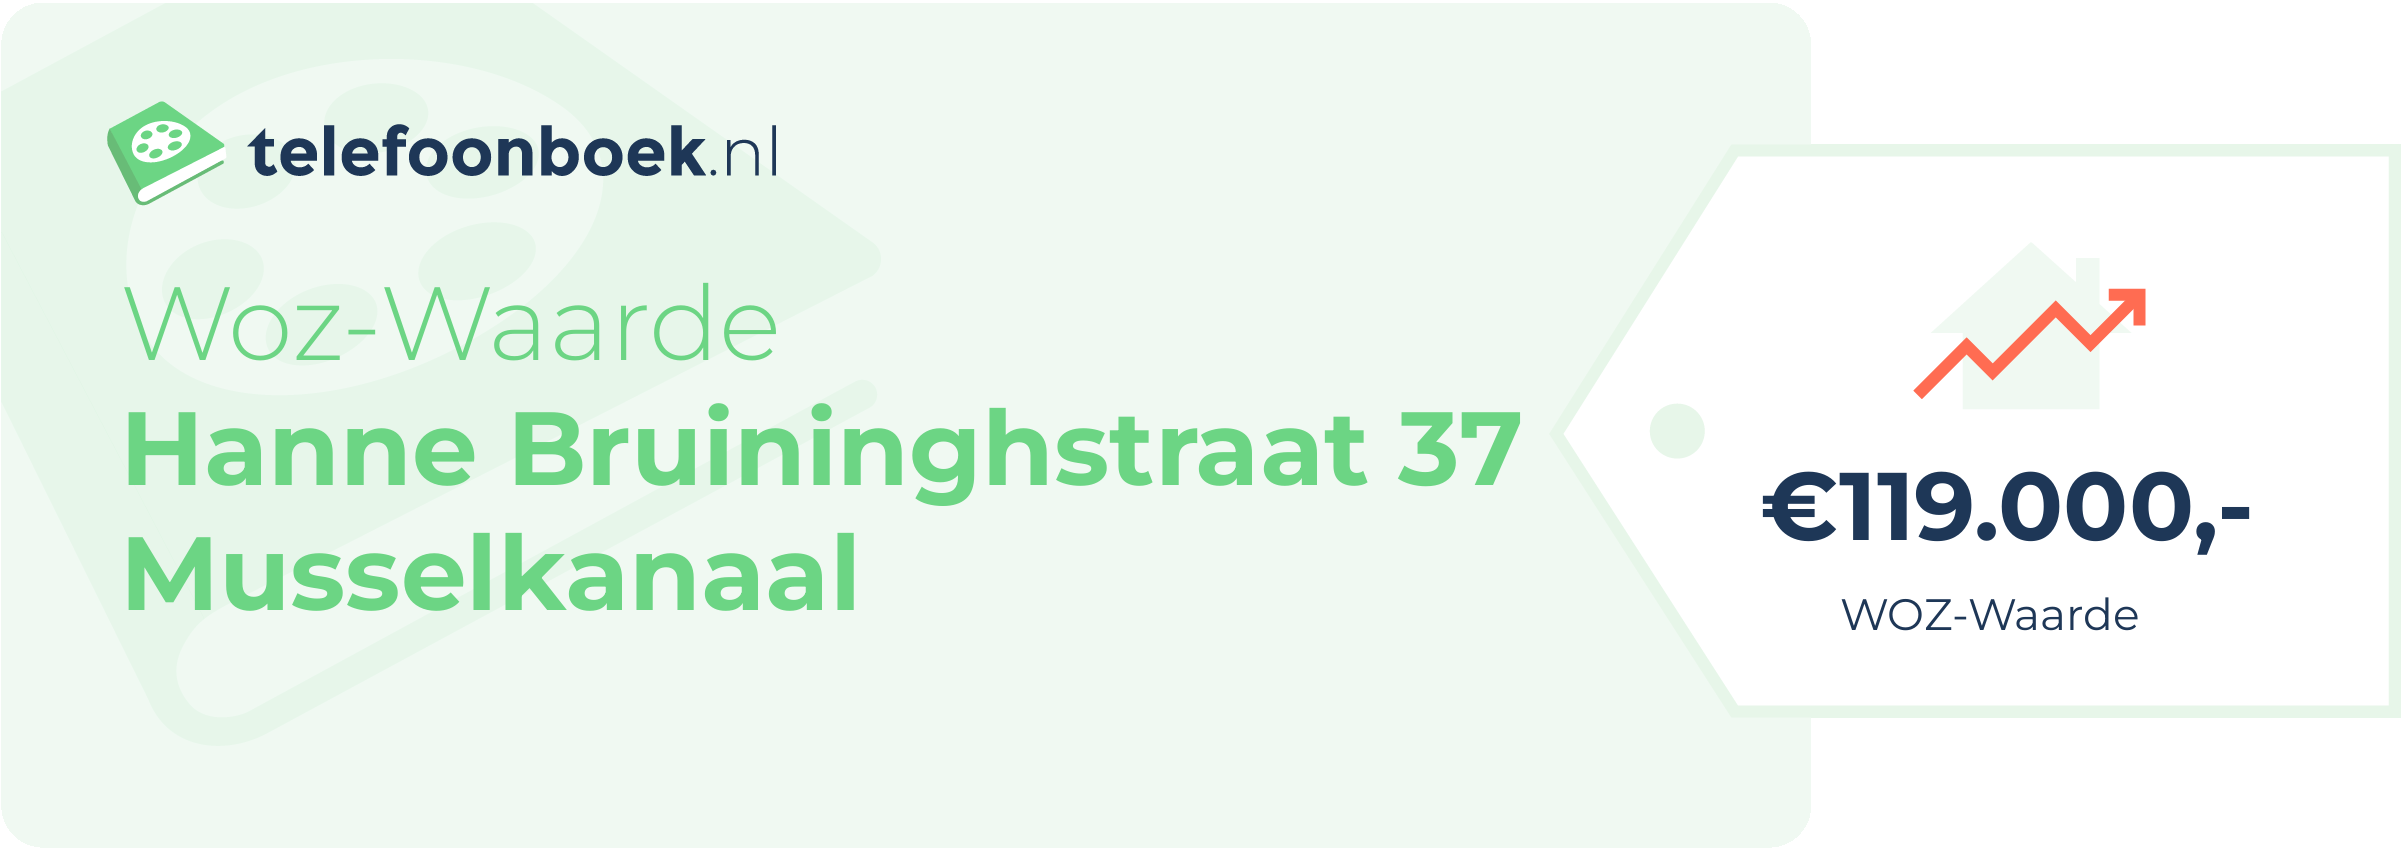 WOZ-waarde Hanne Bruininghstraat 37 Musselkanaal